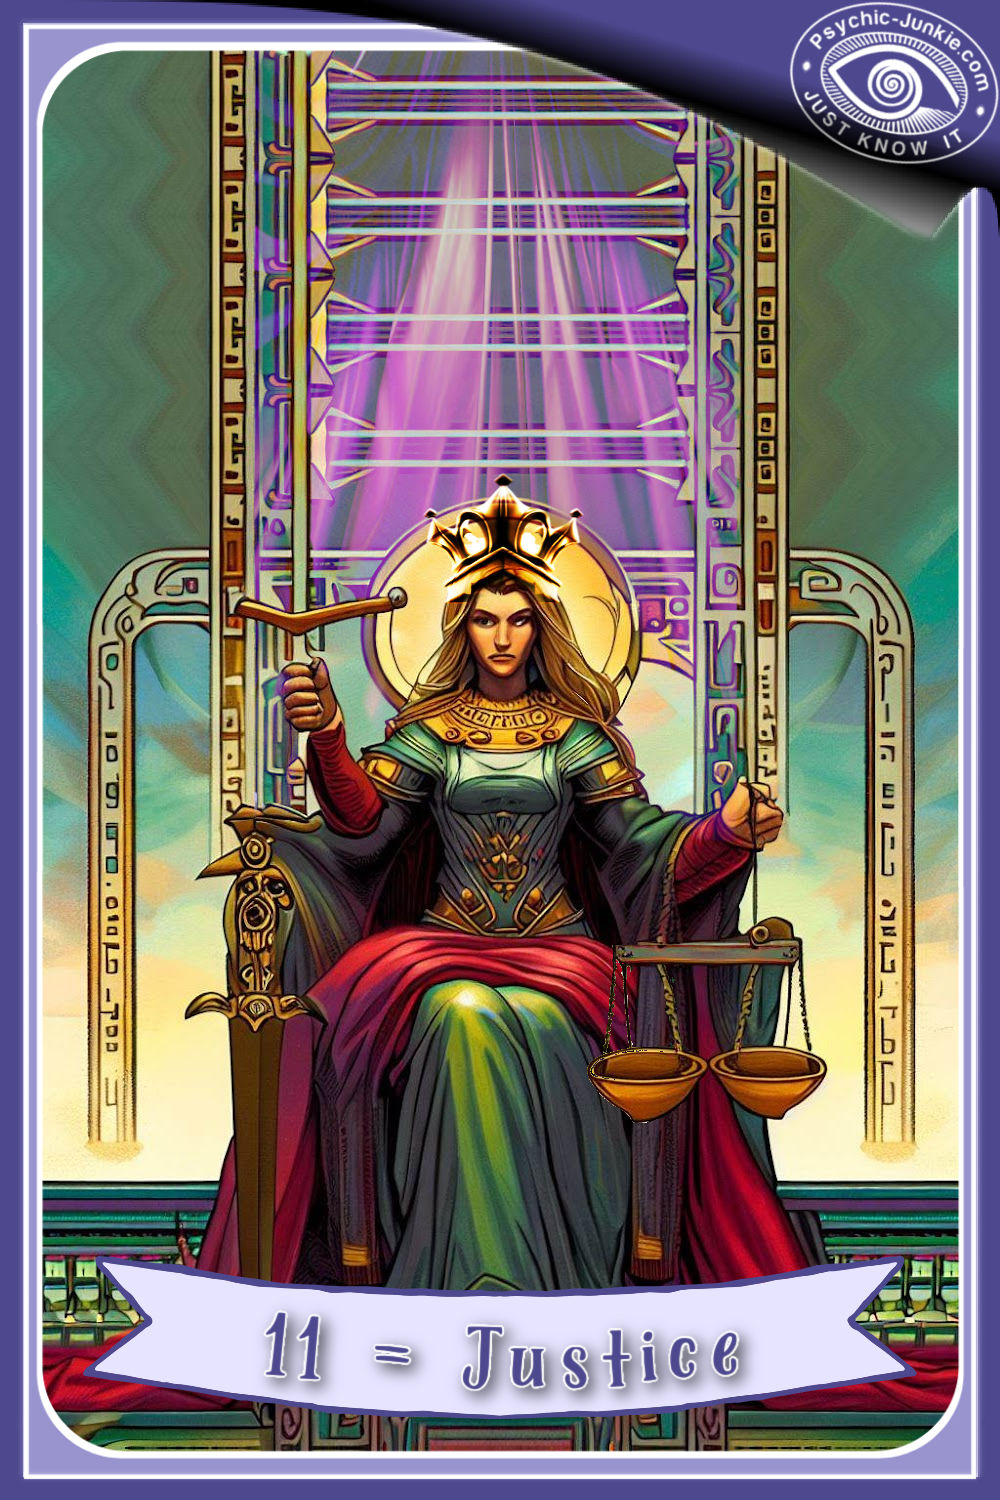 The Justice Tarot Card